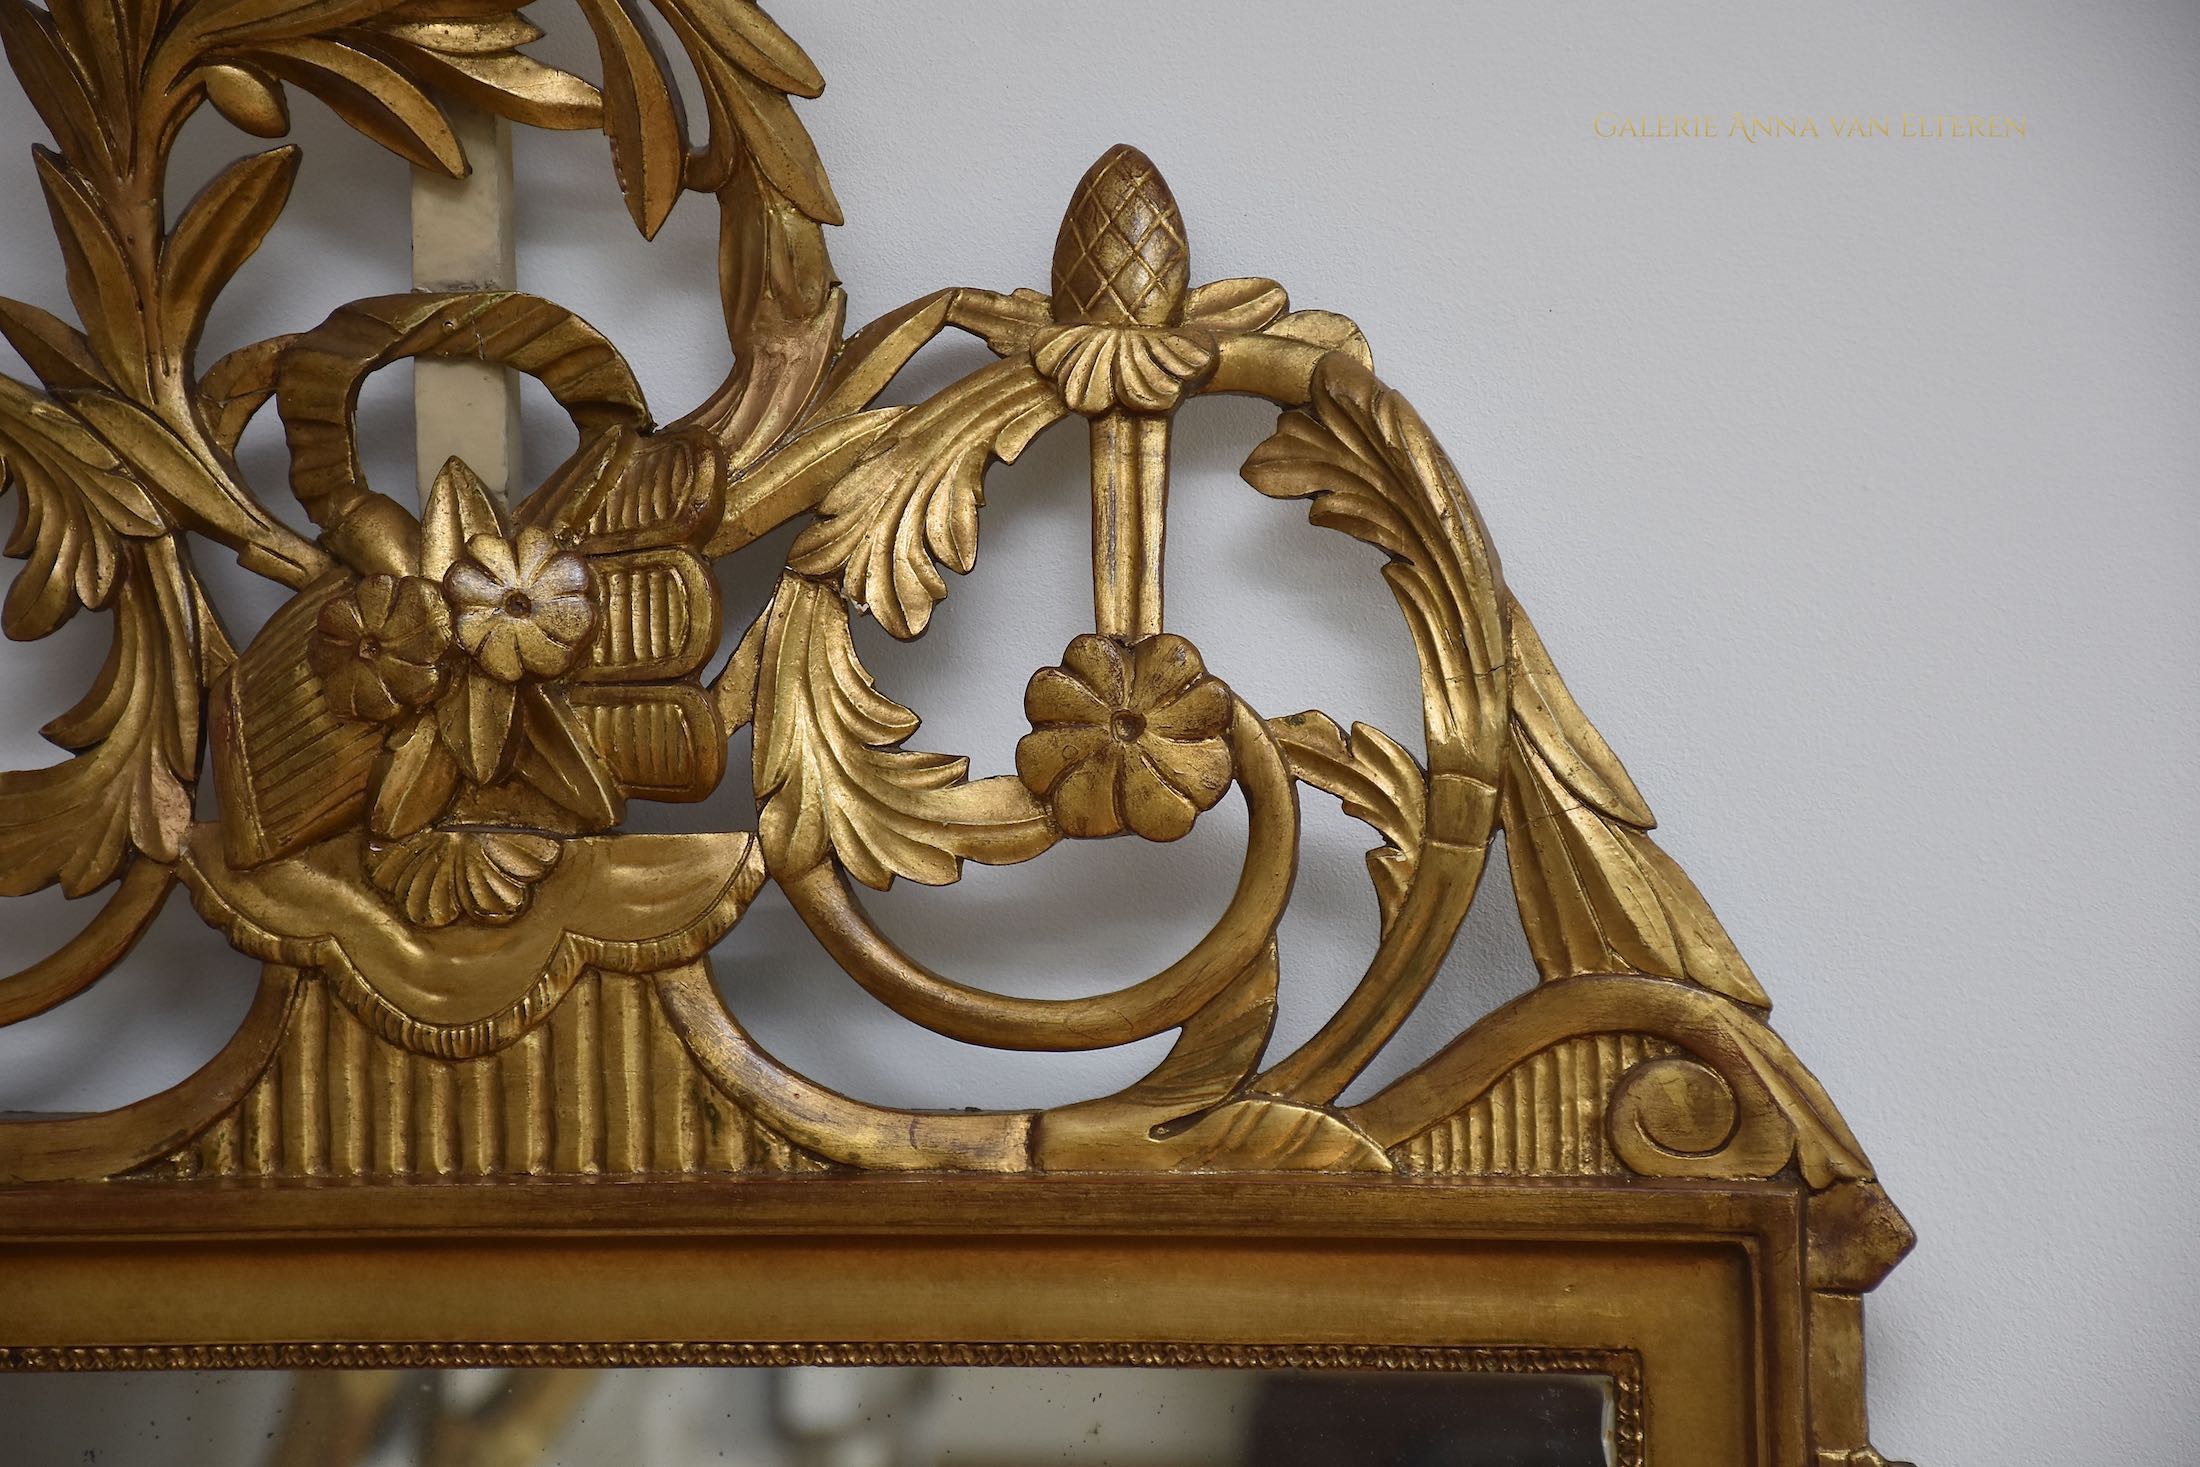 Antieke Franse spiegel in de stijl van Louis XVI